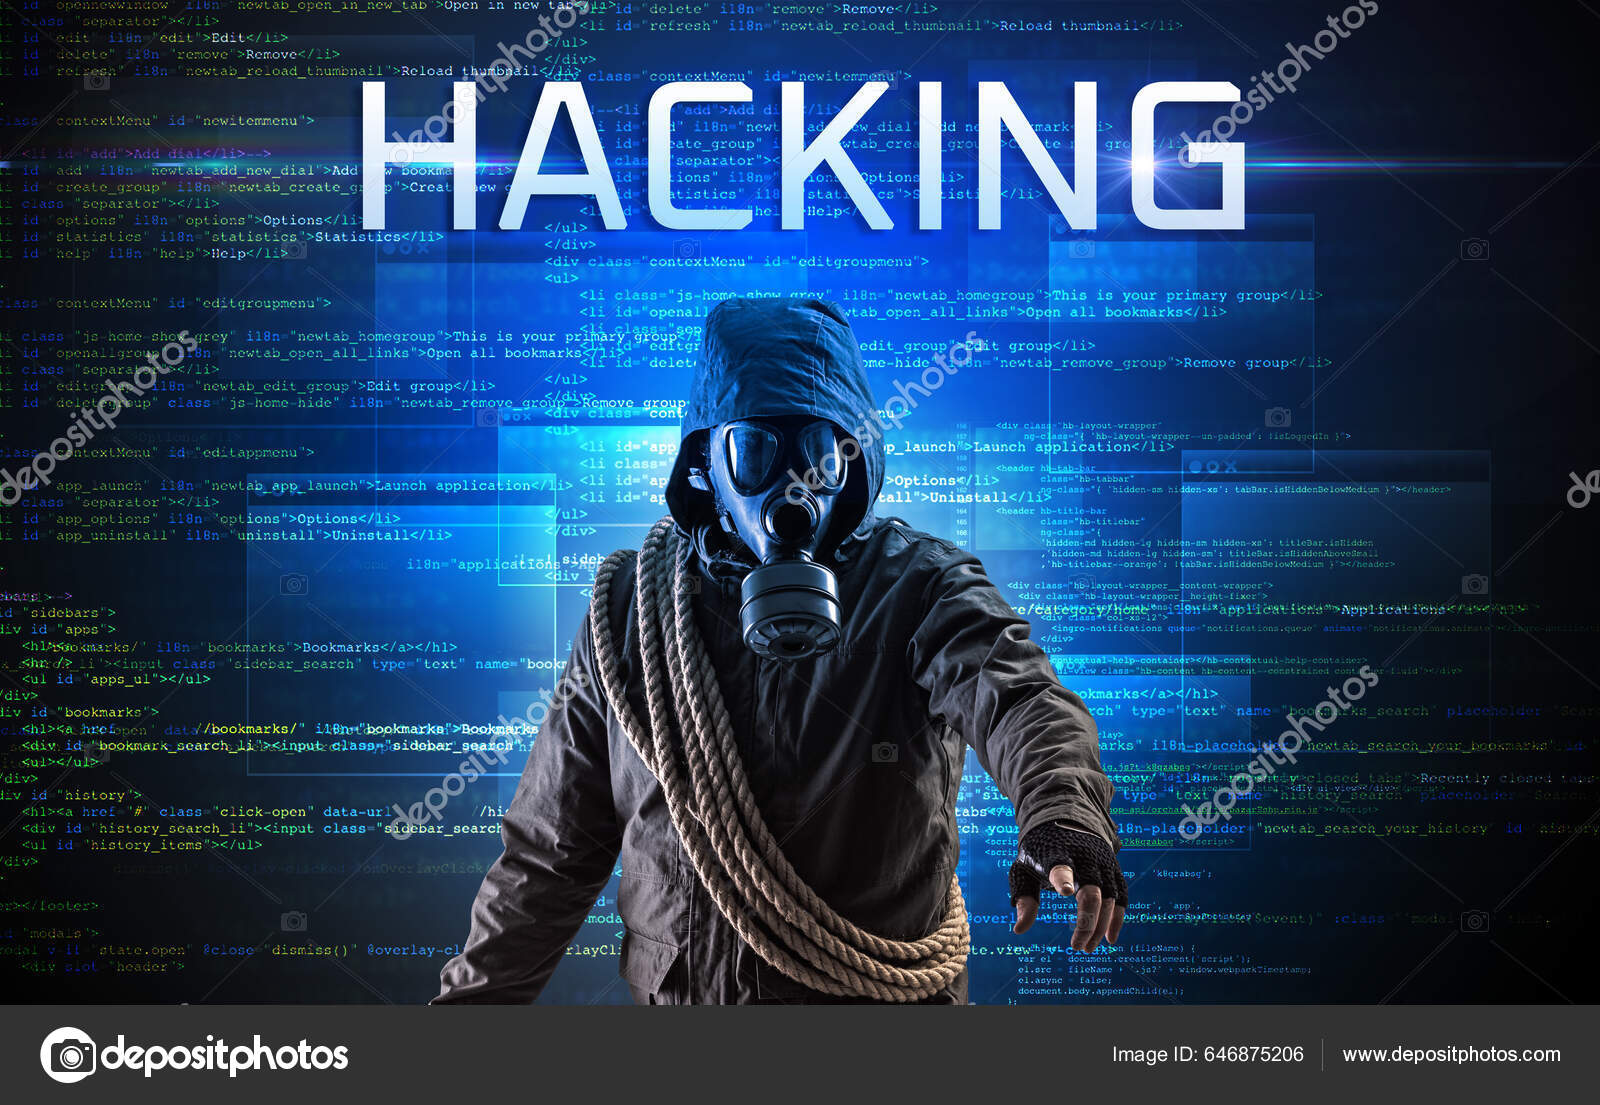 Definição de hacking: O que é hacking?